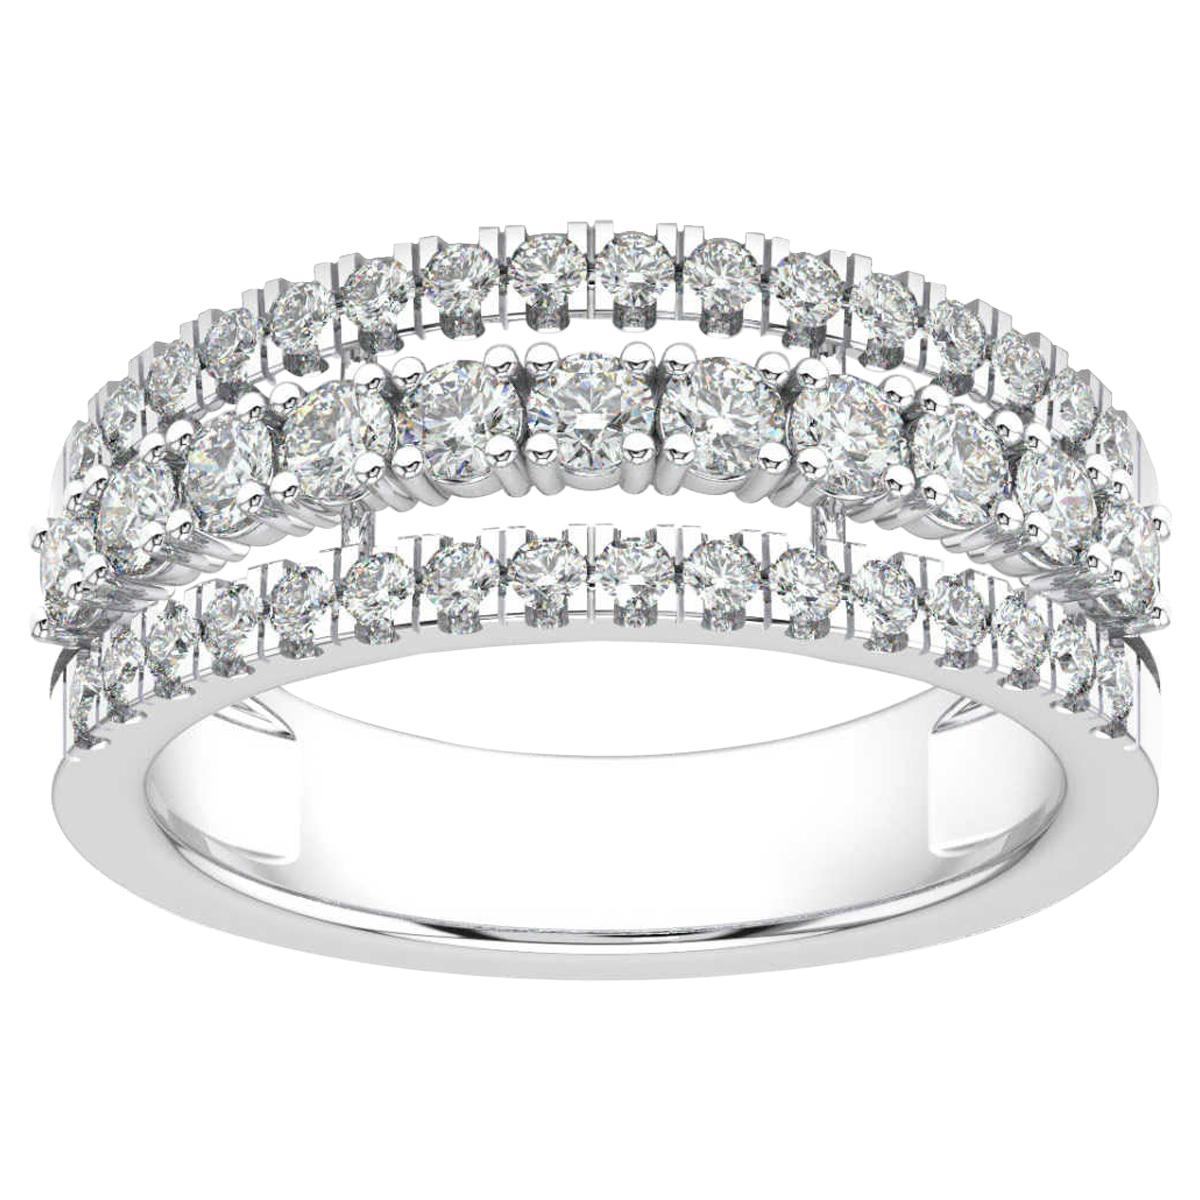 18 Karat White Gold Vega Fashion Diamond Ring '1 Carat'